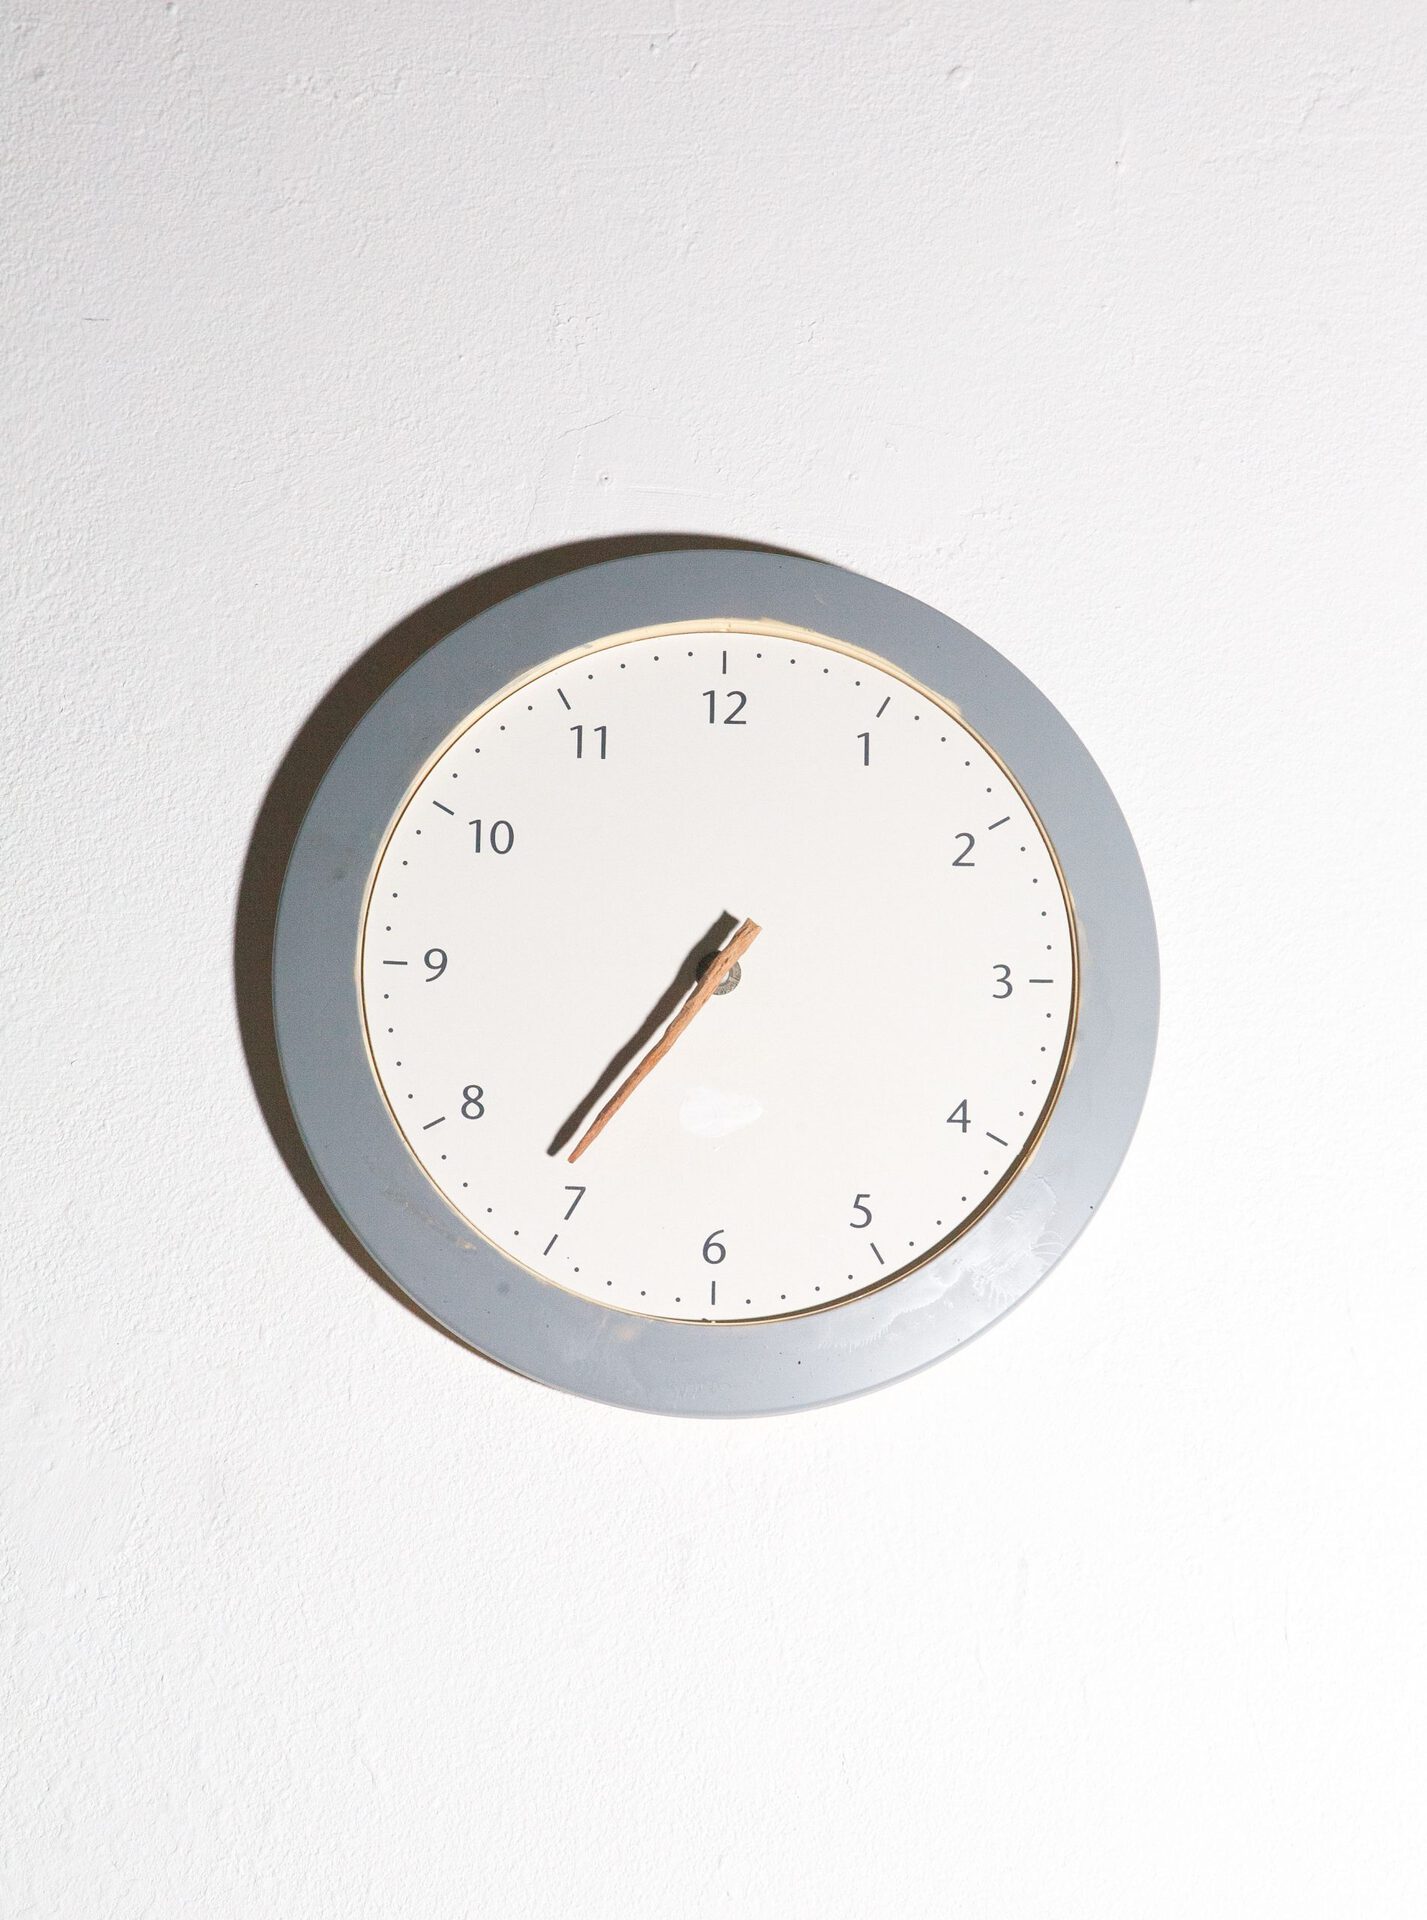 Suyoung Yang, "Alseep Long Away" , material-lindenwood, clock, 2019